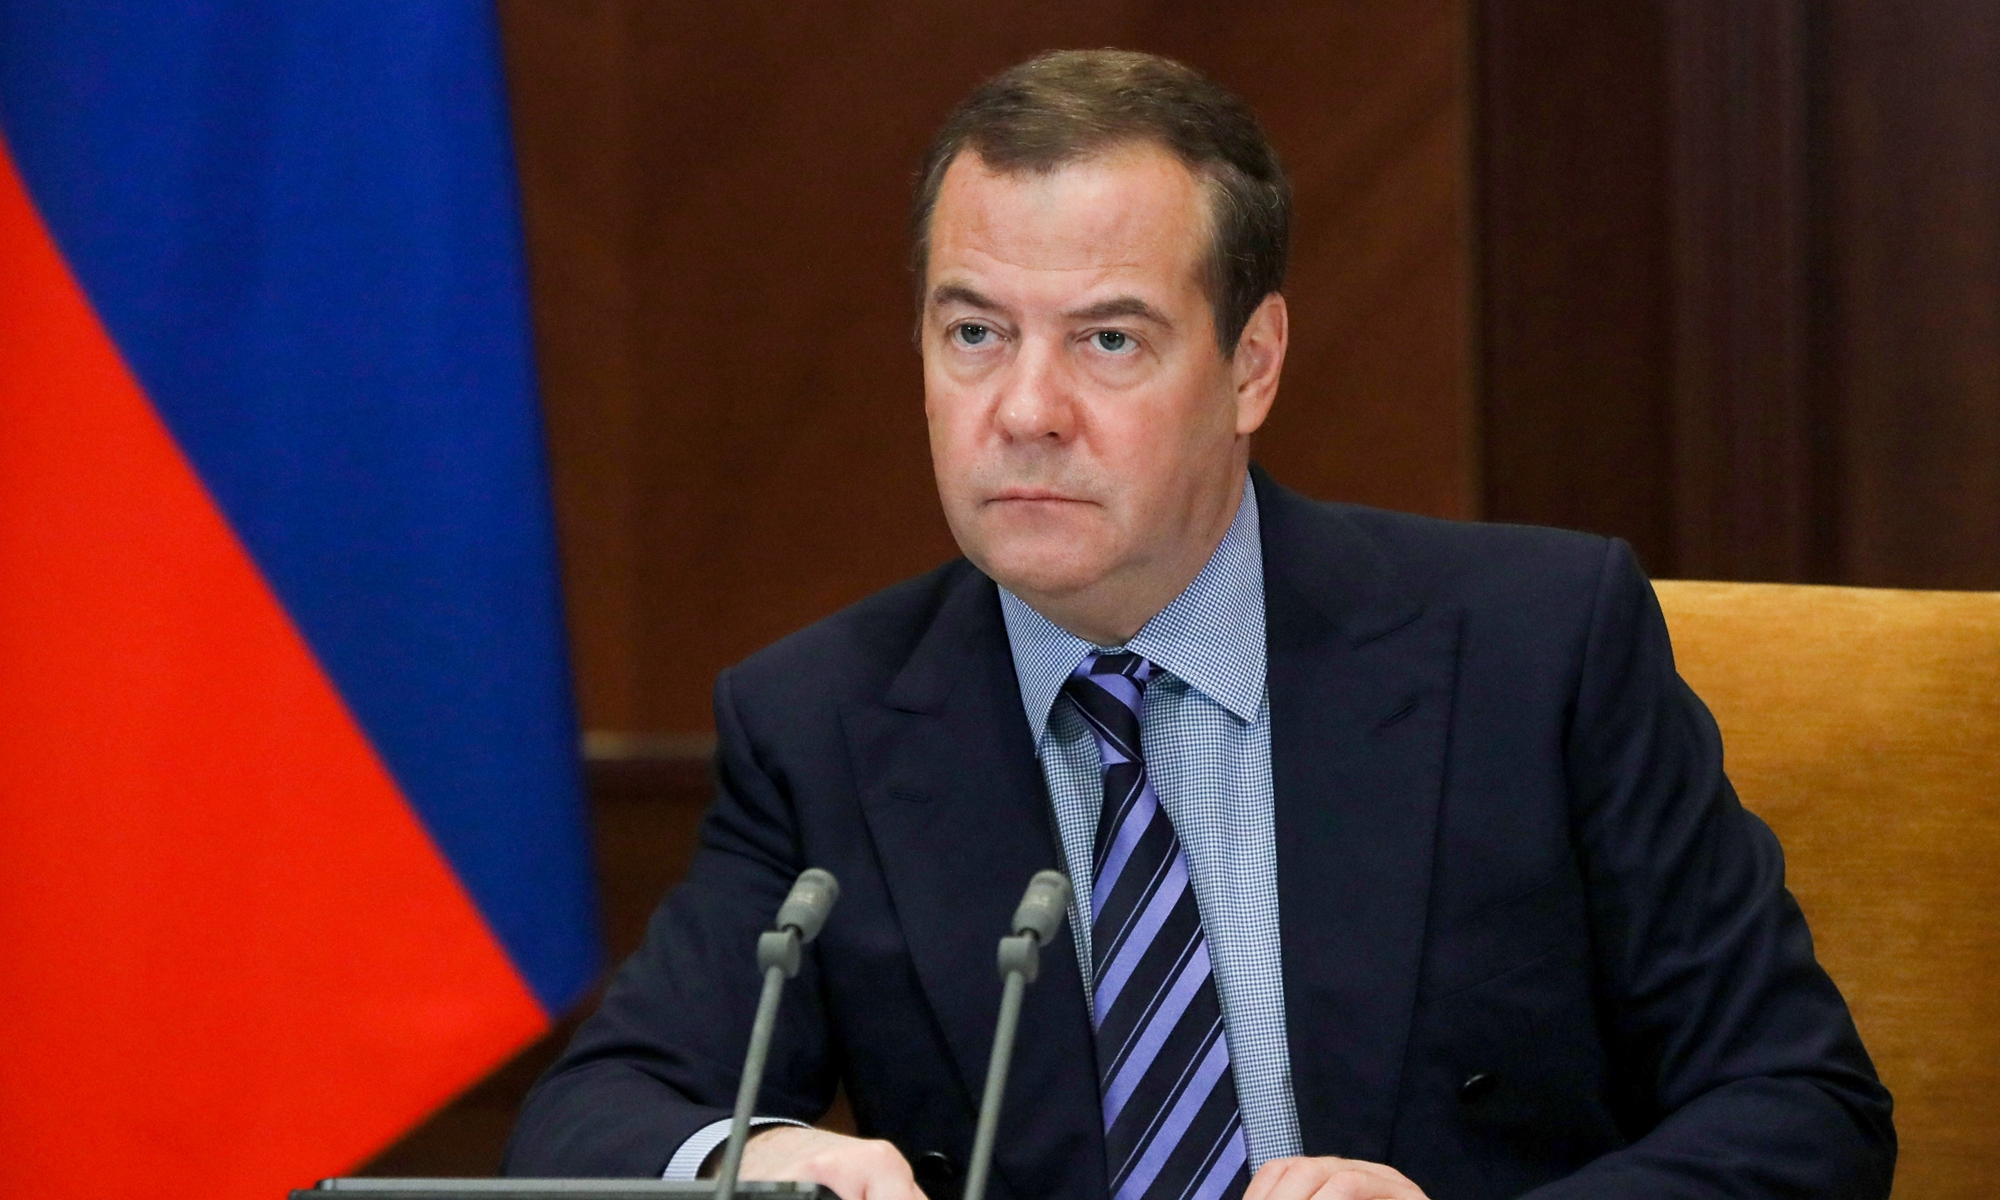 Medvedev minaccia: "L'invio di truppe occidentali in Ucraina provocherebbe una catastrofe mondiale"